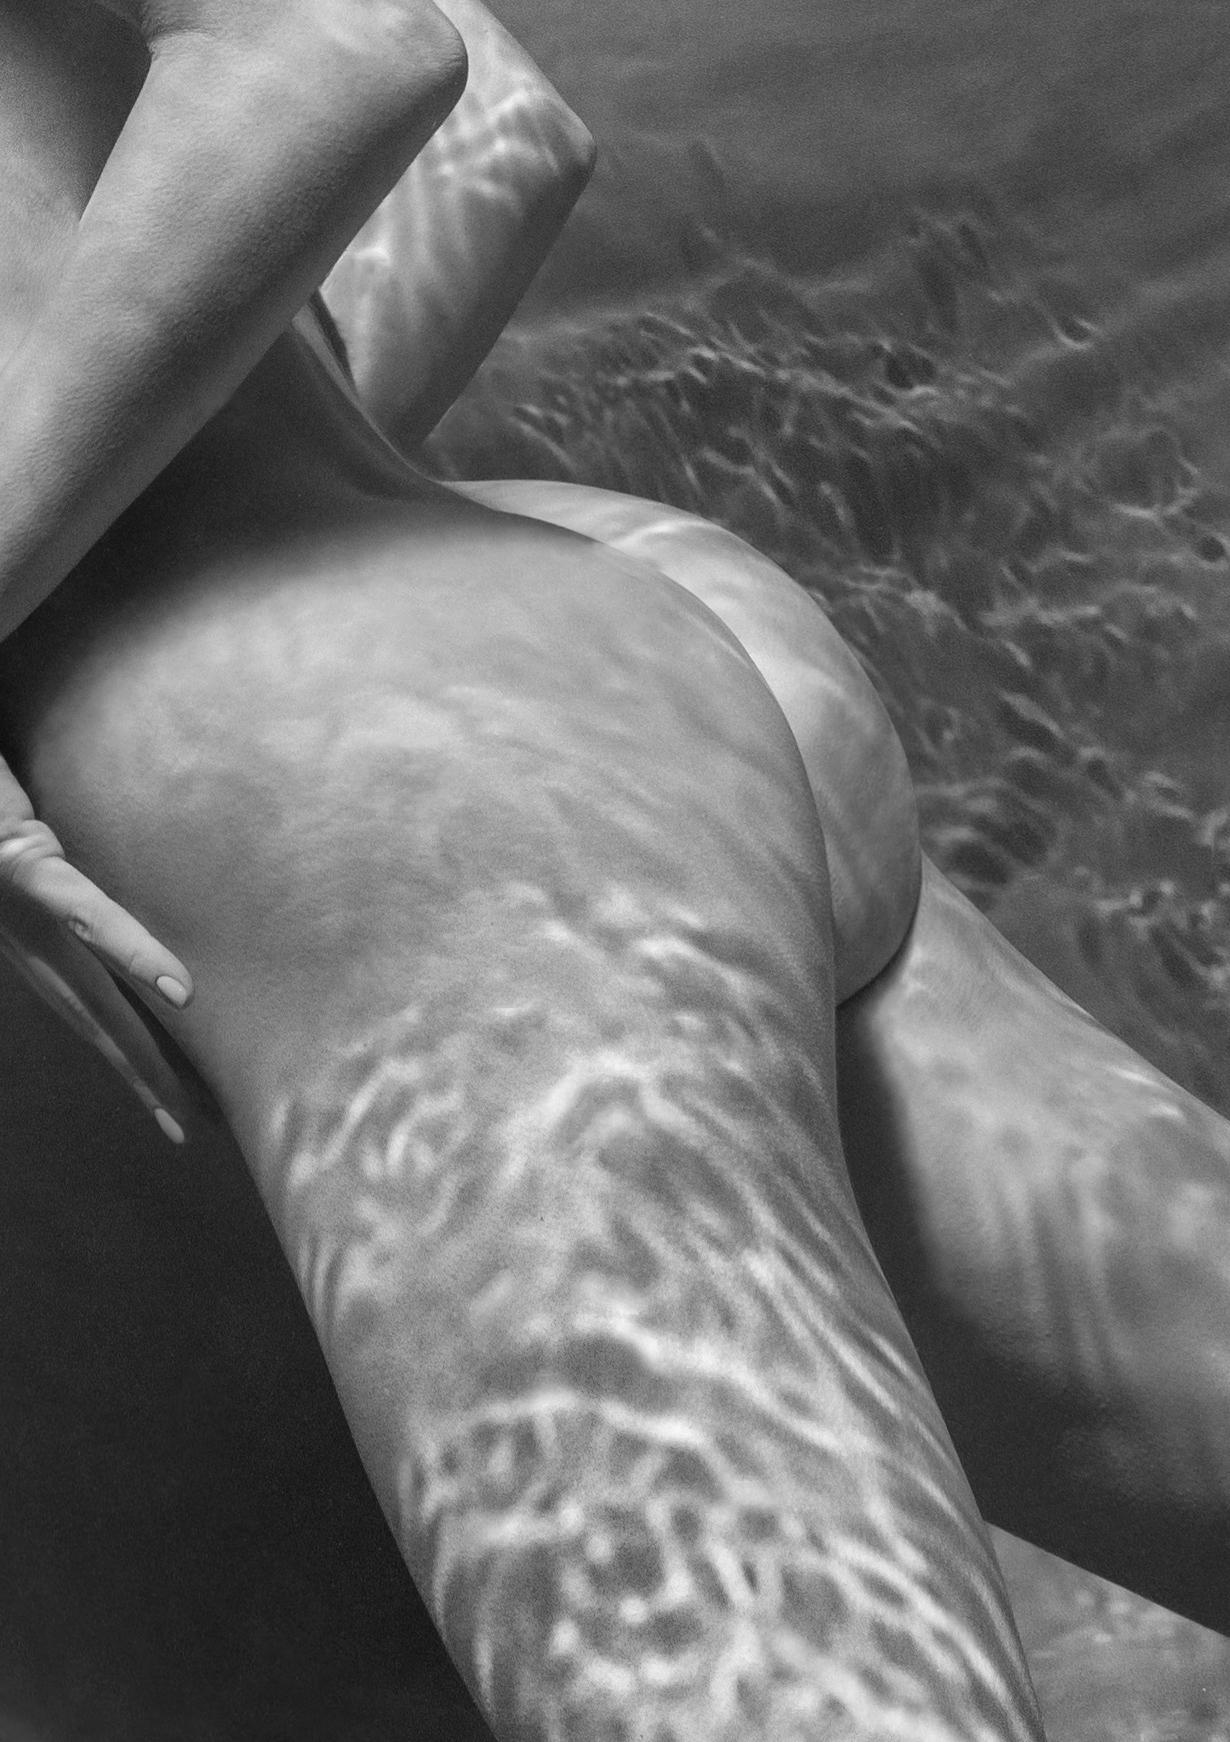 Unterwasser-Schwarz-Weiß-Foto einer jungen nackten Frau. Das Gesicht des Modells und ihre klassische Brust sind von Sonnenstrahlen bedeckt.

Original-Digitaldruck auf Aluminiumplatte, vom Künstler signiert.
Limitierte Auflage von 12 Stück
Das